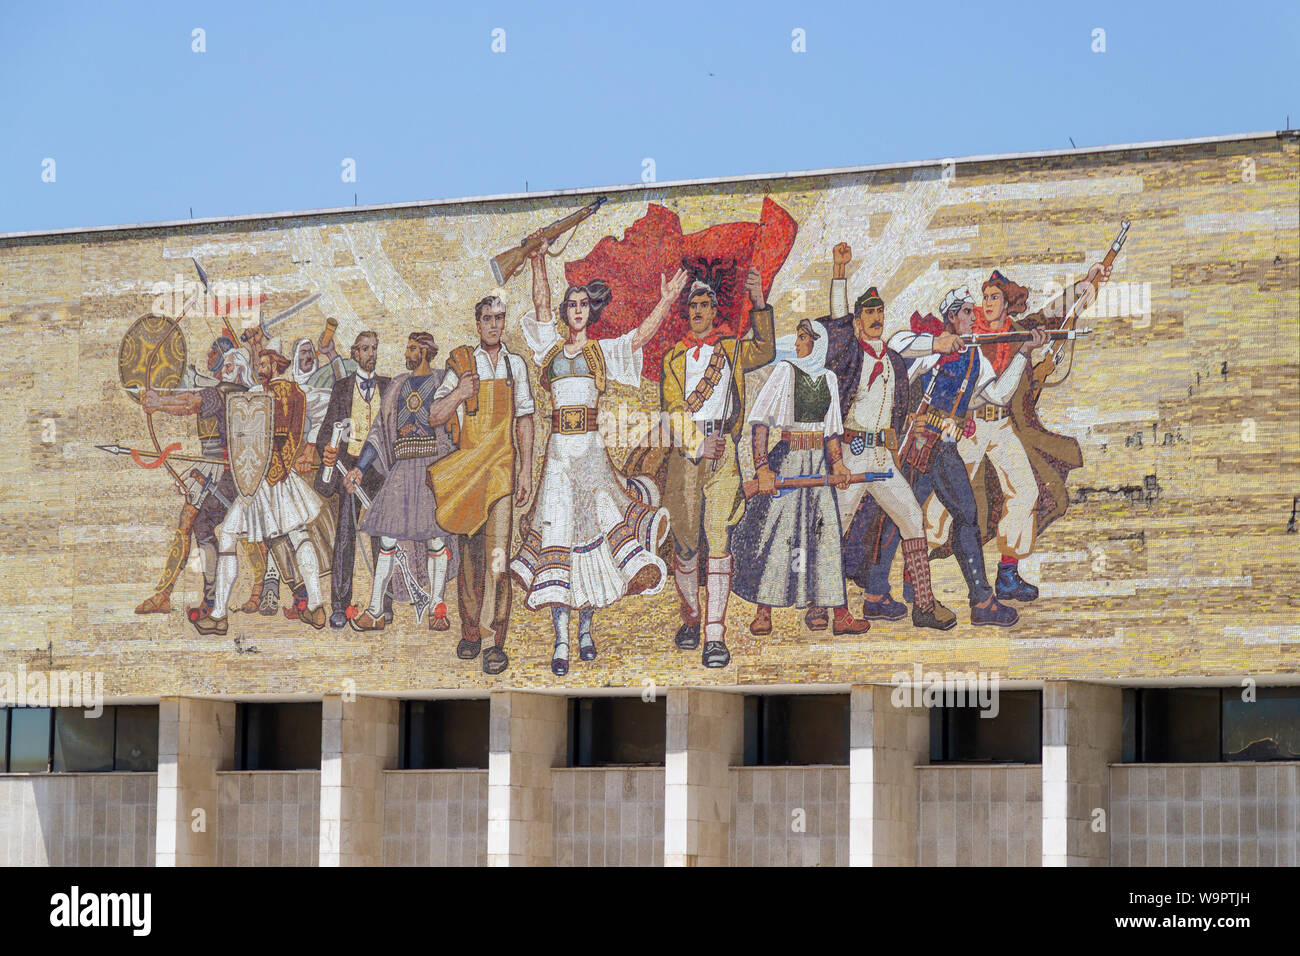 TIRANA, Albania - Mayo 27, 2018: Mosaico de propaganda socialista y revolucionaria heroica por encima del Museo Nacional de Historia en Tirana Foto de stock